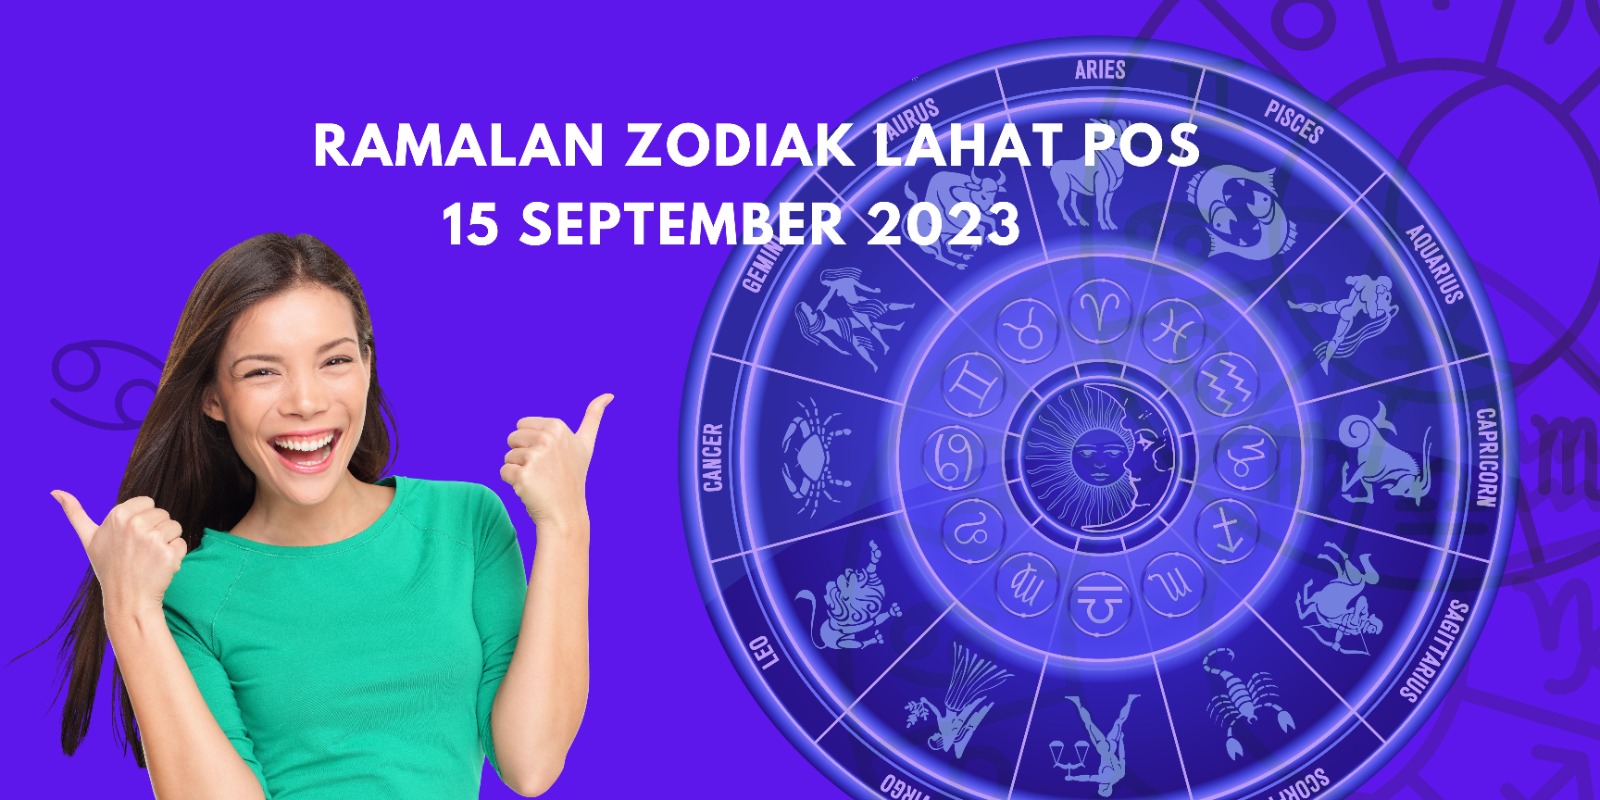 Cancer Luangkan Waktumu, Ramalan Zodiak Jumat 15 September 2023